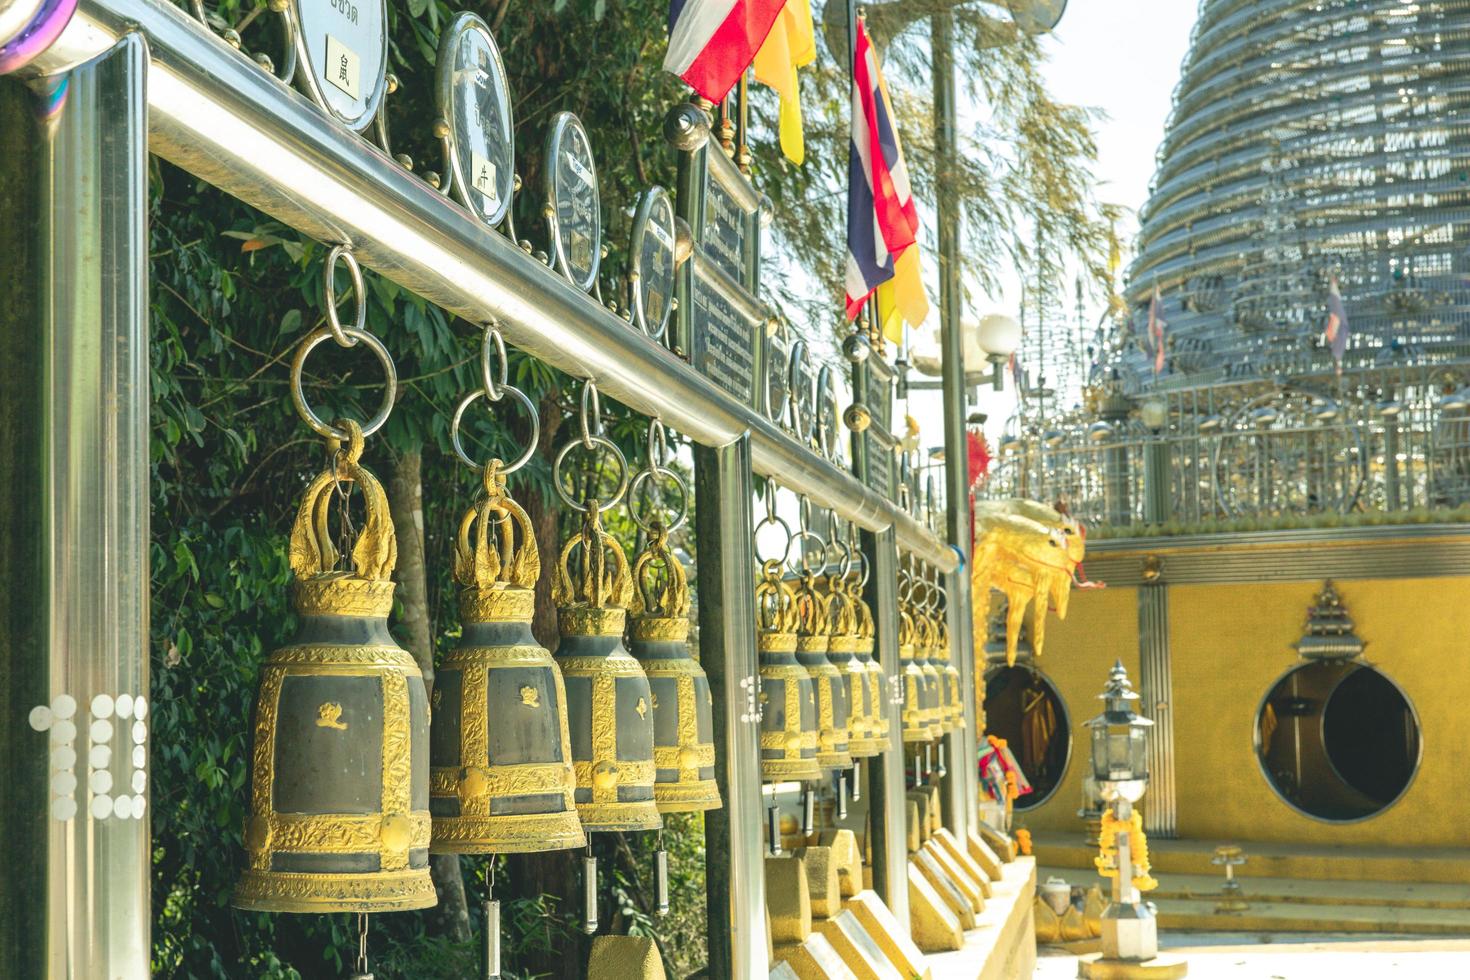 phra maha that chedi triphop tri mongkhon, hat yai, thaïlande - février 2022 - atmosphère à l'intérieur des attractions touristiques religieuses de maha chedi tripob trimongkol avec une grande pagode en acier inoxydable. photo